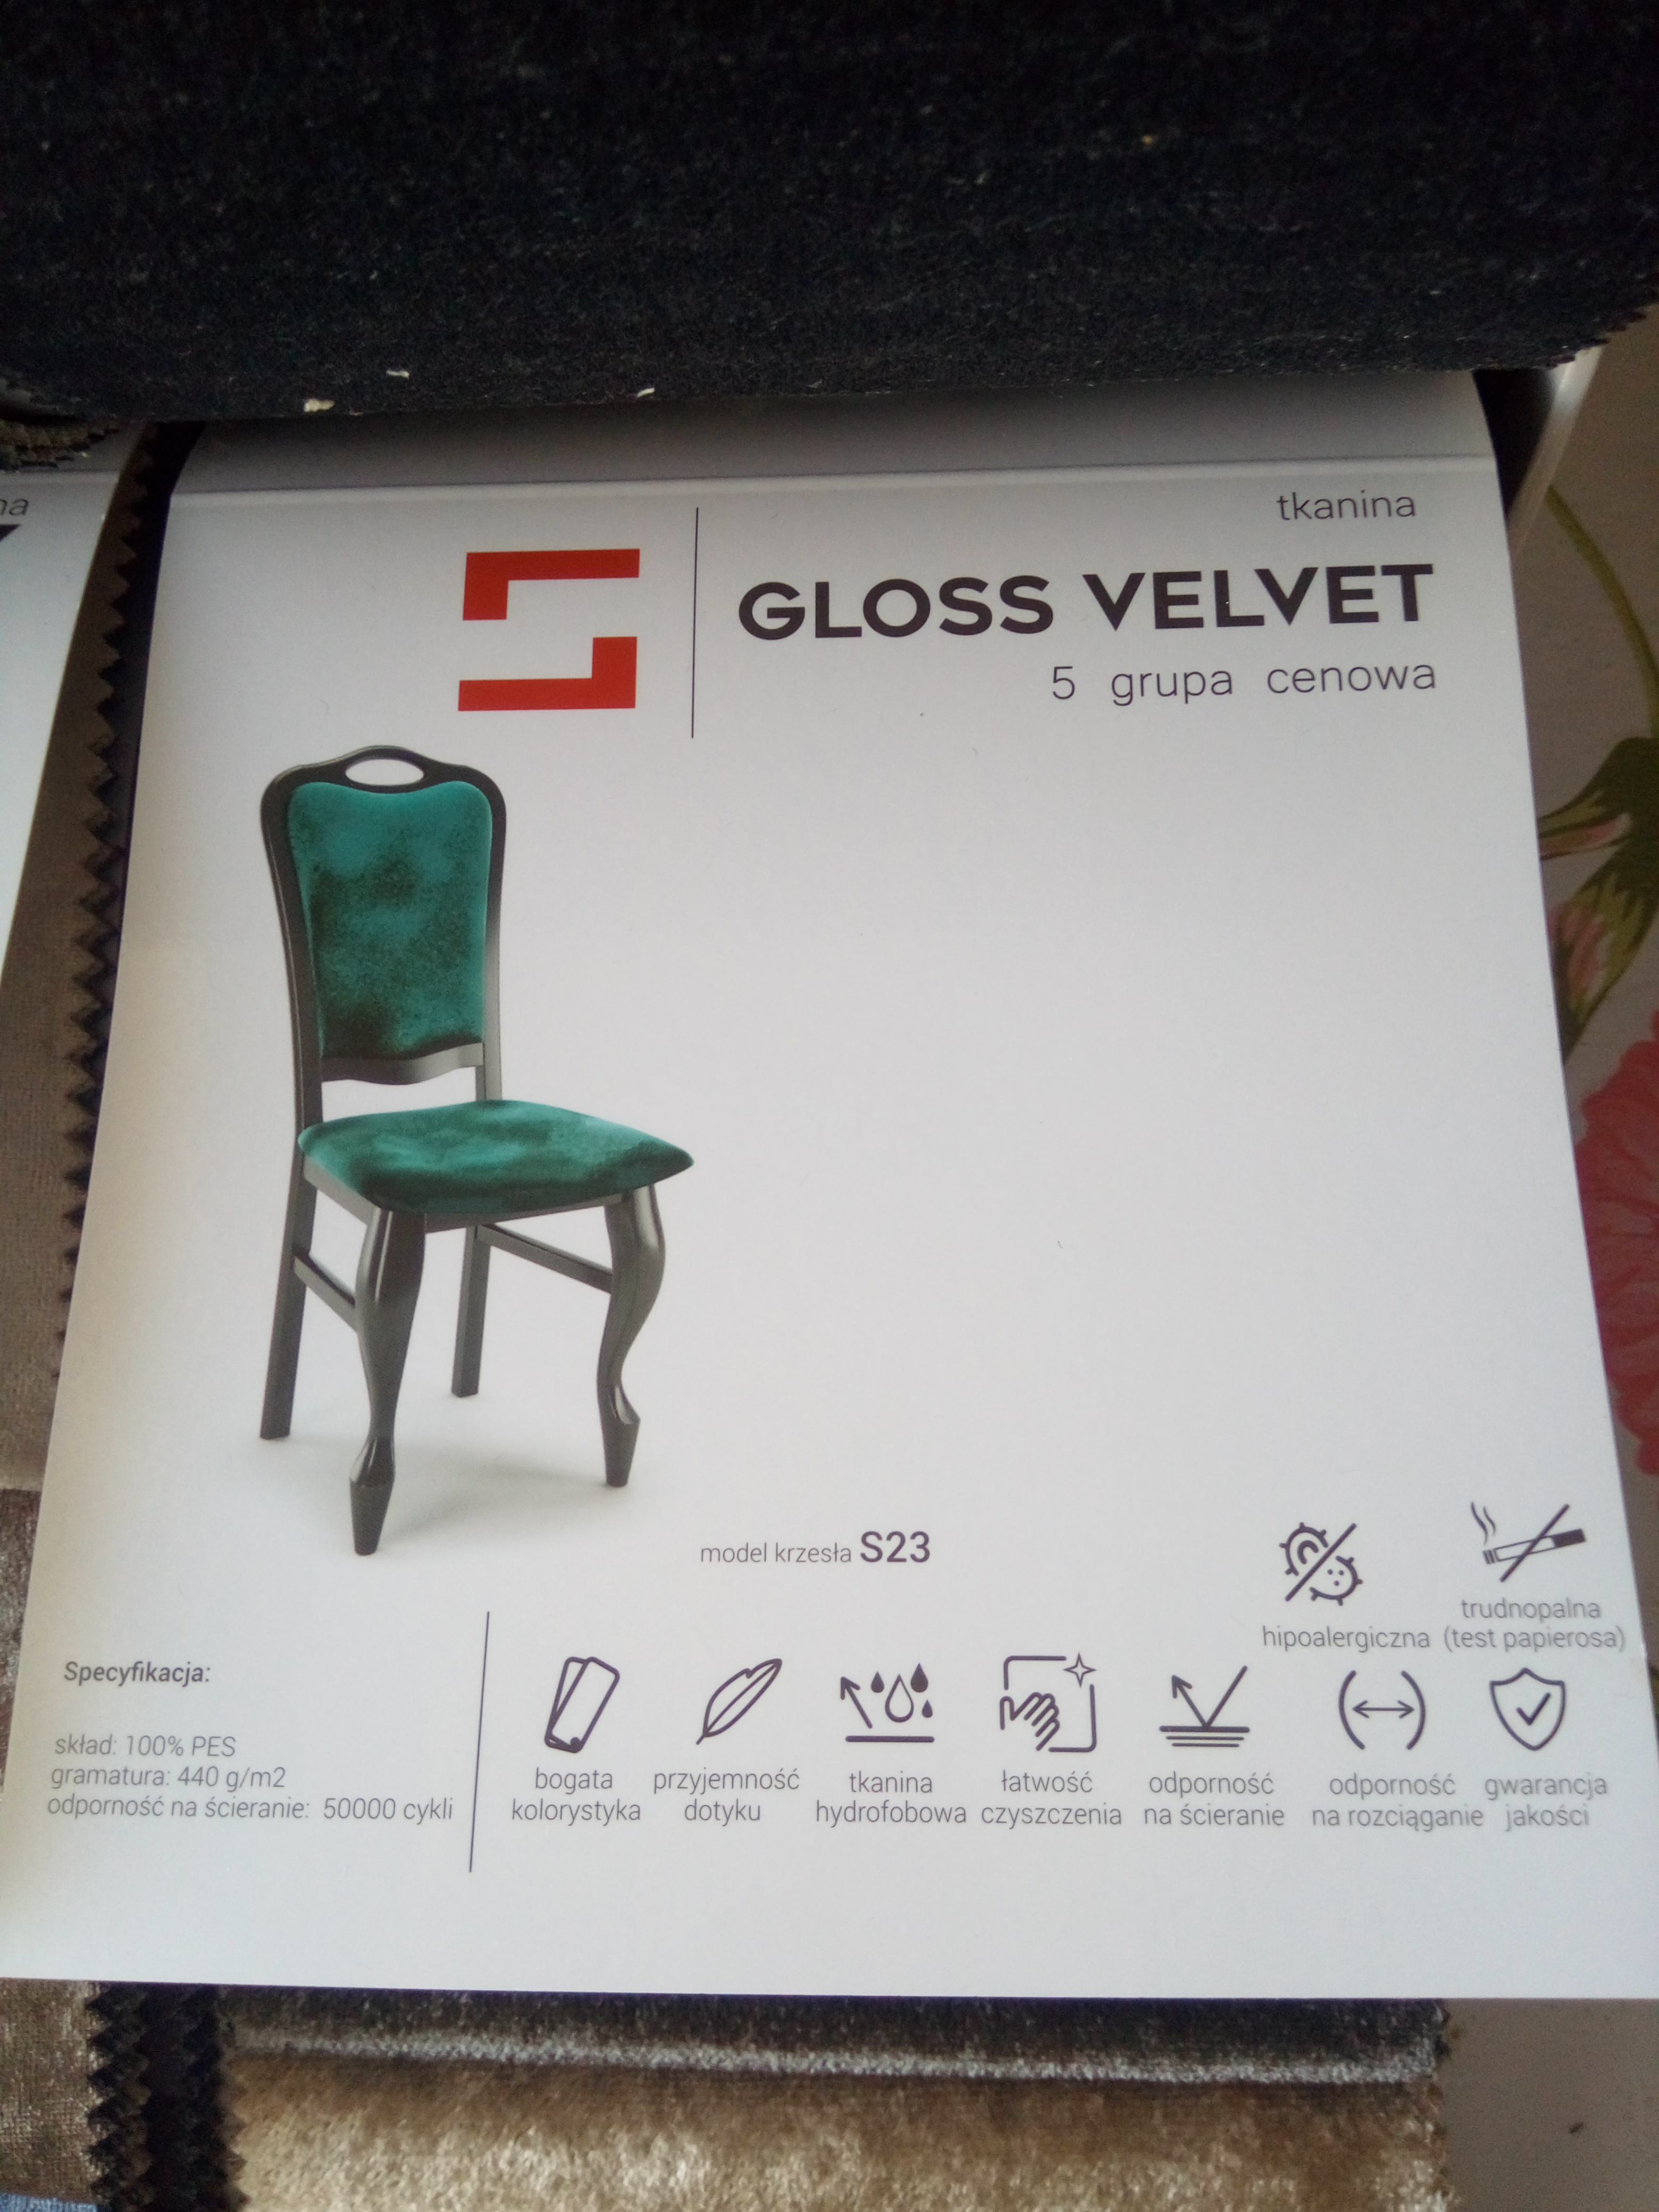 Gloss Velvet gr5